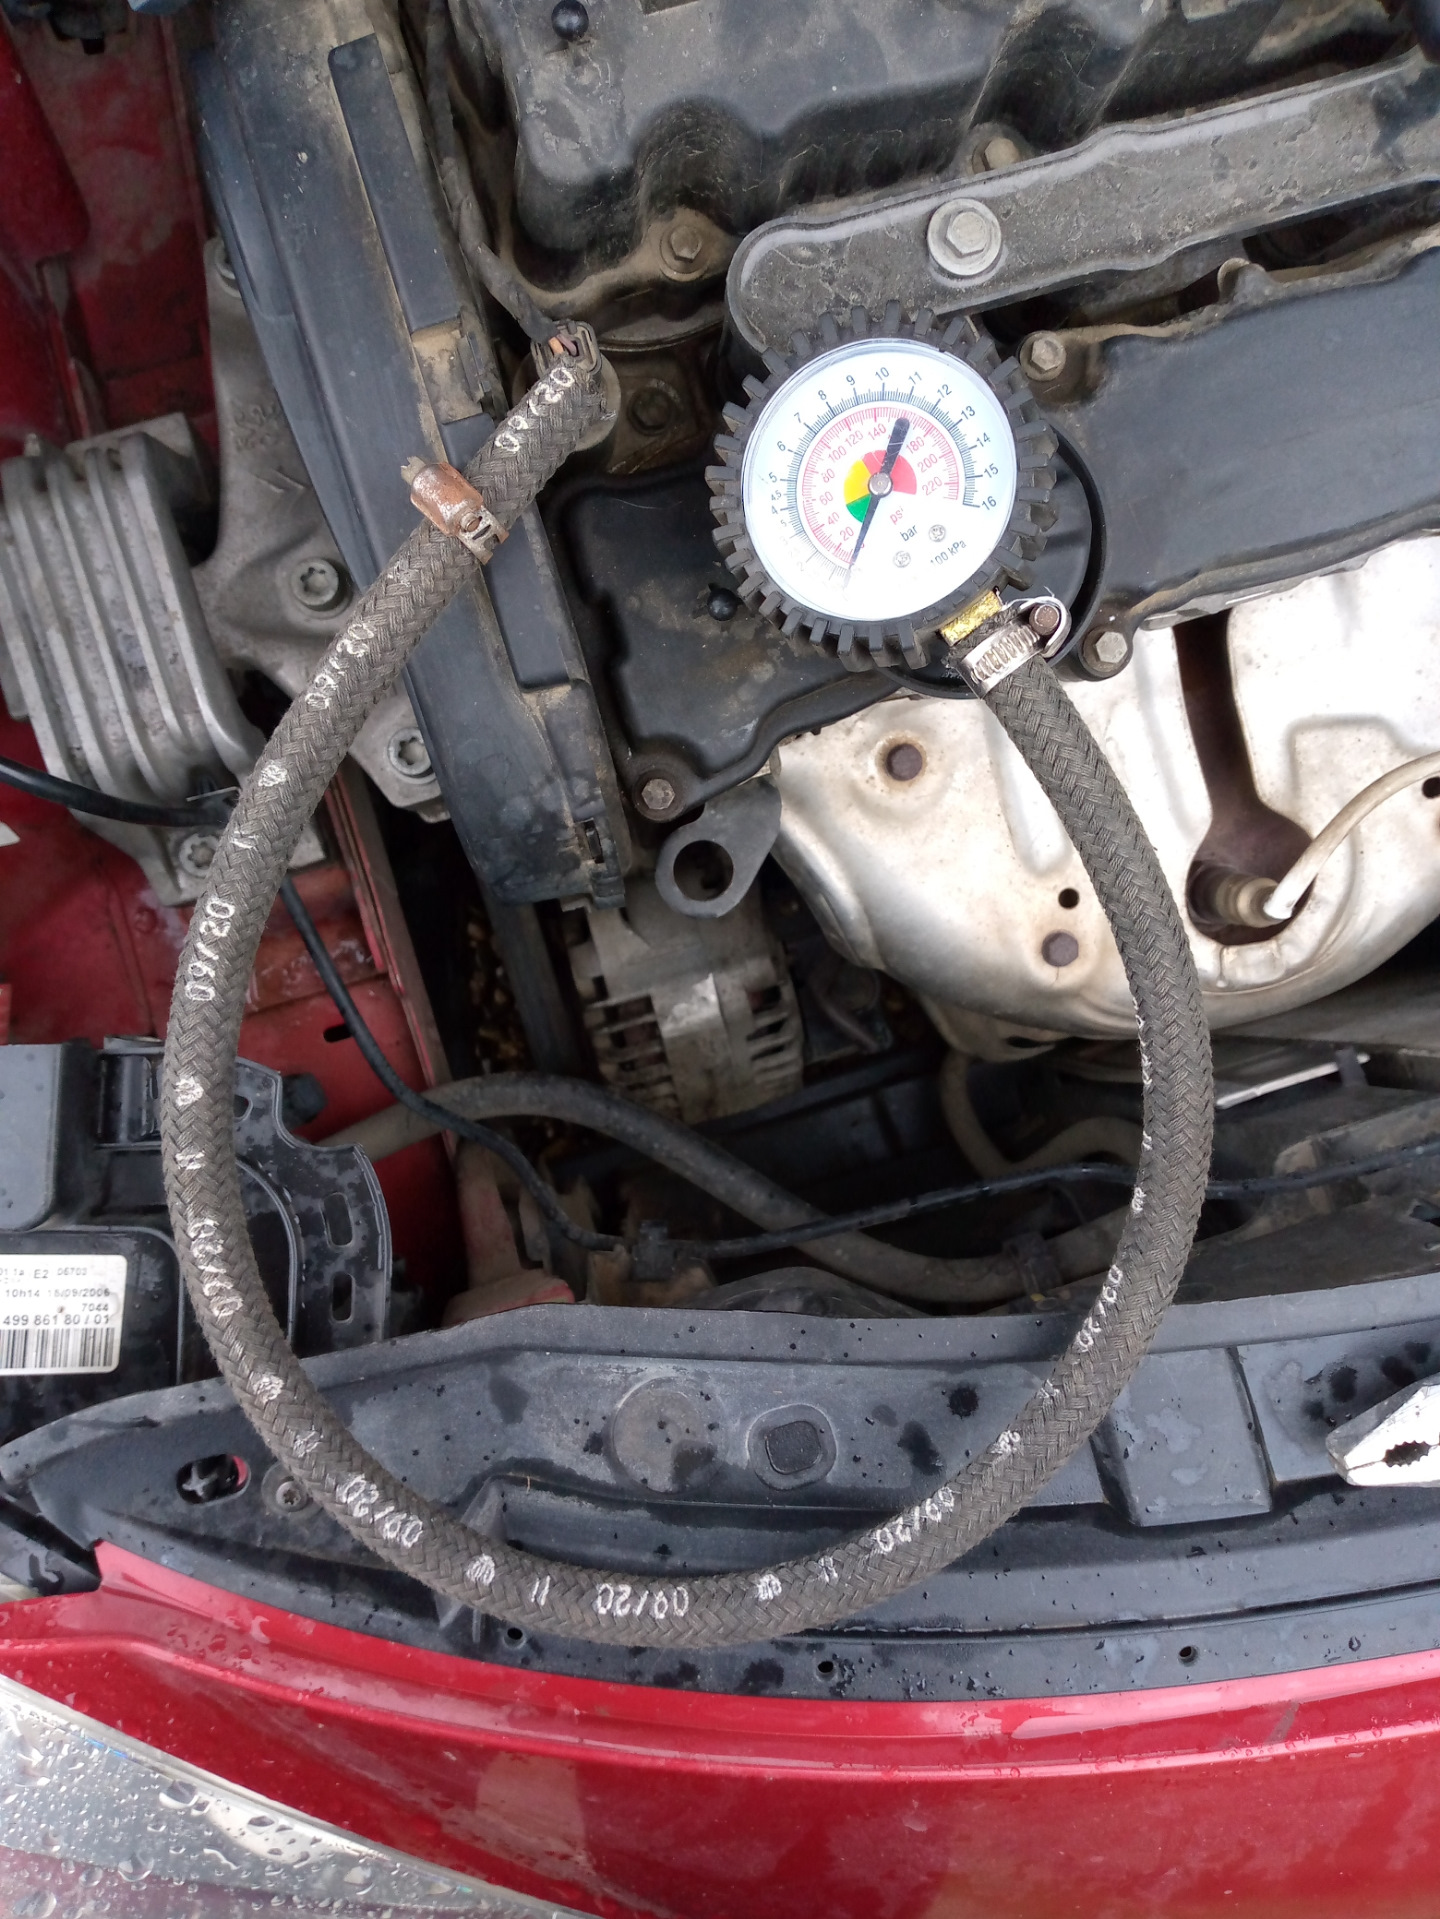 Peugeot давление масла. Давления топлива в рампе Пежо 406 2.0 бензин. Пежо 307 давление в топливной рампе. Замер давления в топливной рампе Пежо 307. Замер компрессии Пежо 307 дизель.